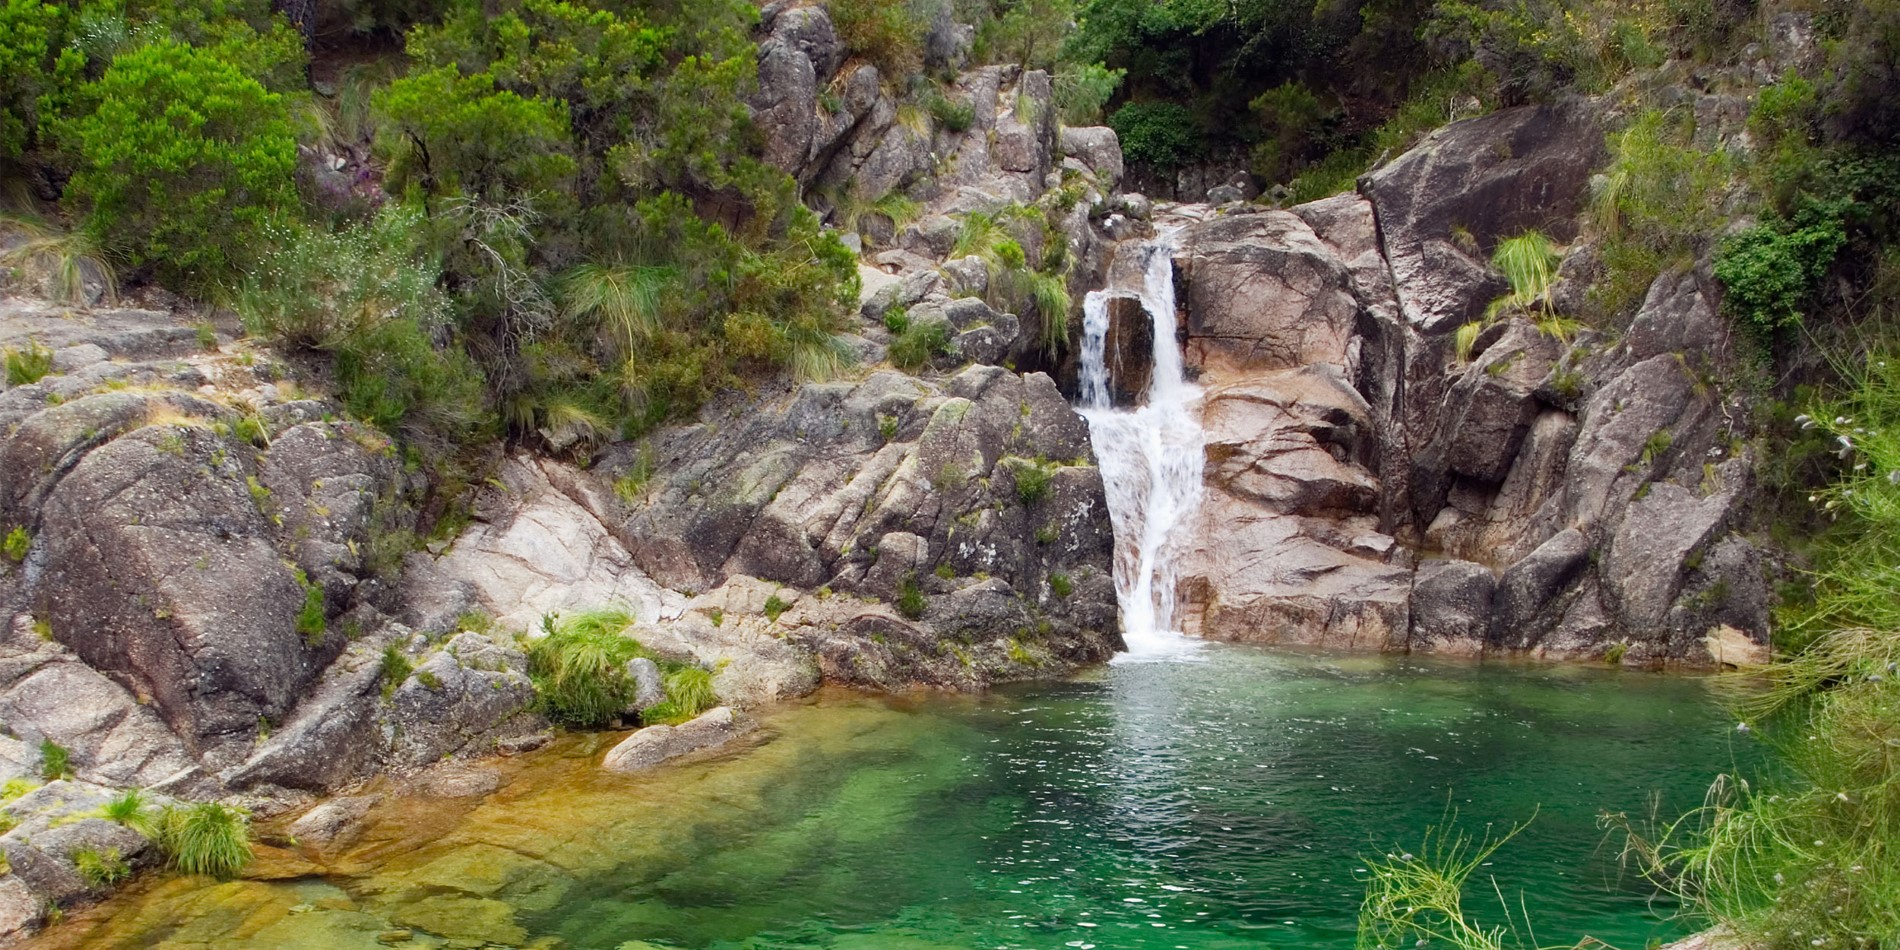  Les chutes d'eau d'Arado, parc national de Gerês, Portugal.